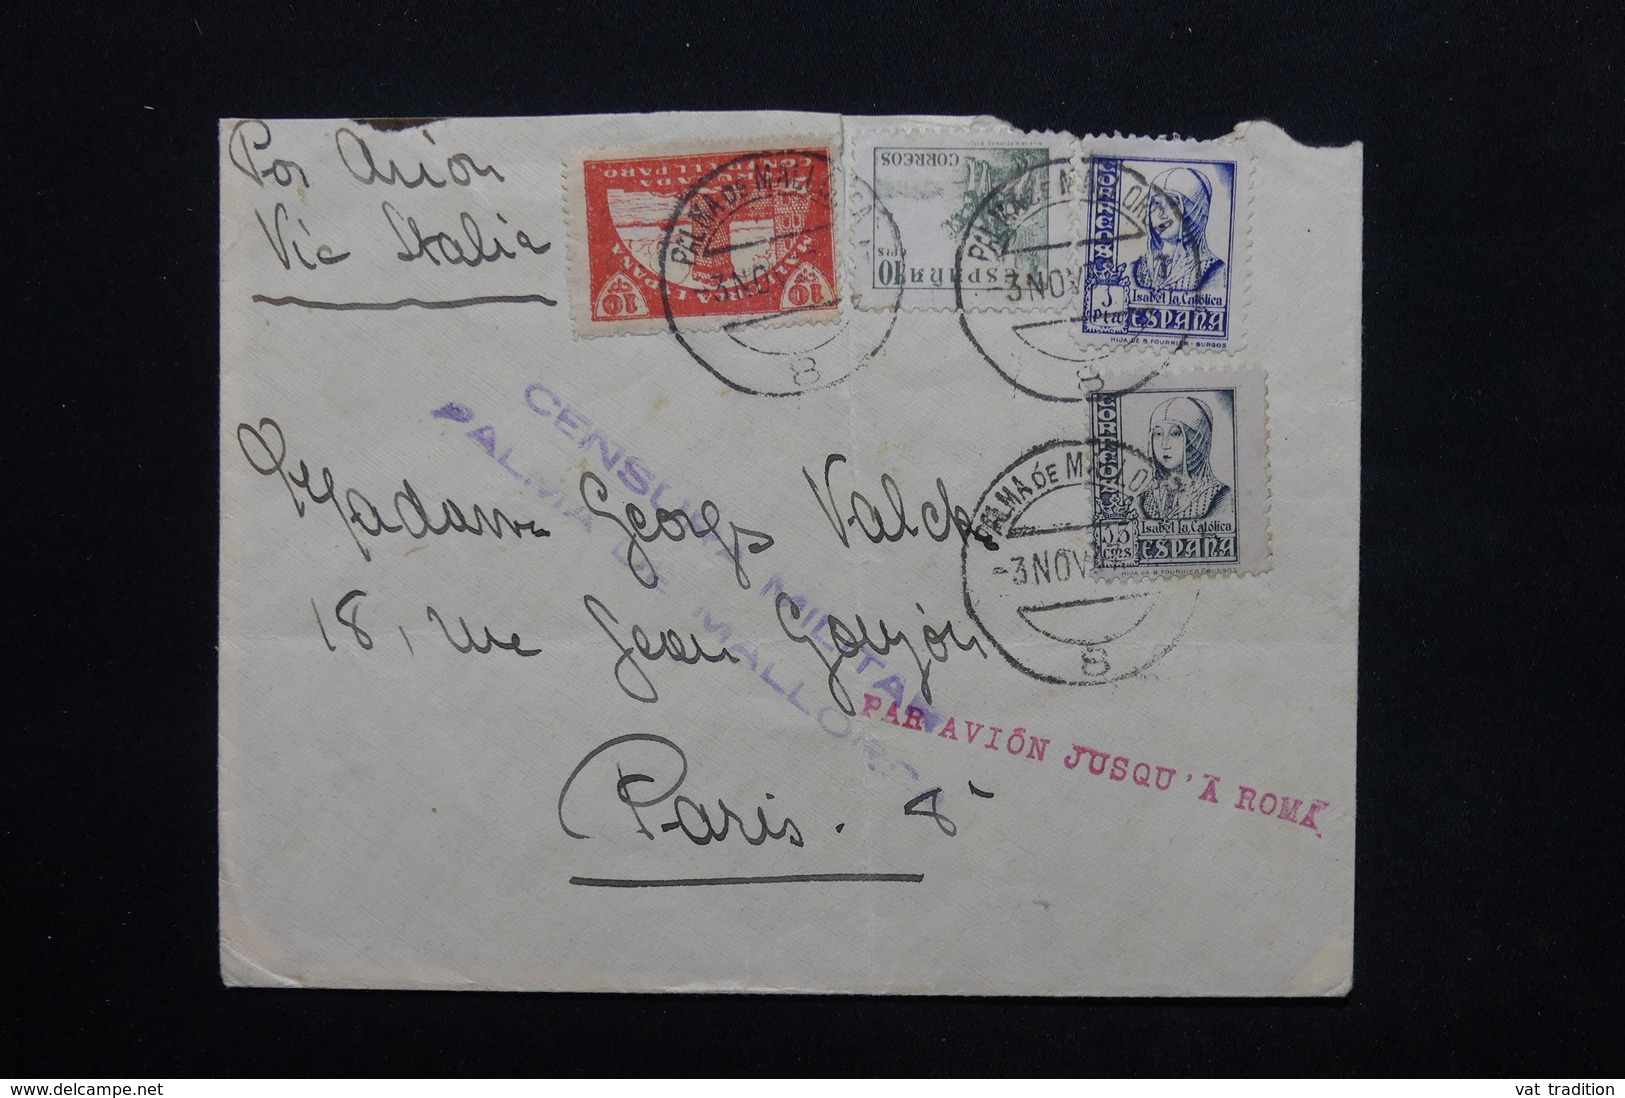 ESPAGNE - Enveloppe De Palma De Mallorca Pour Paris En 1937 Avec Contrôle Postal , Par Avion Via Rome - L 24788 - Bolli Di Censura Repubblicana